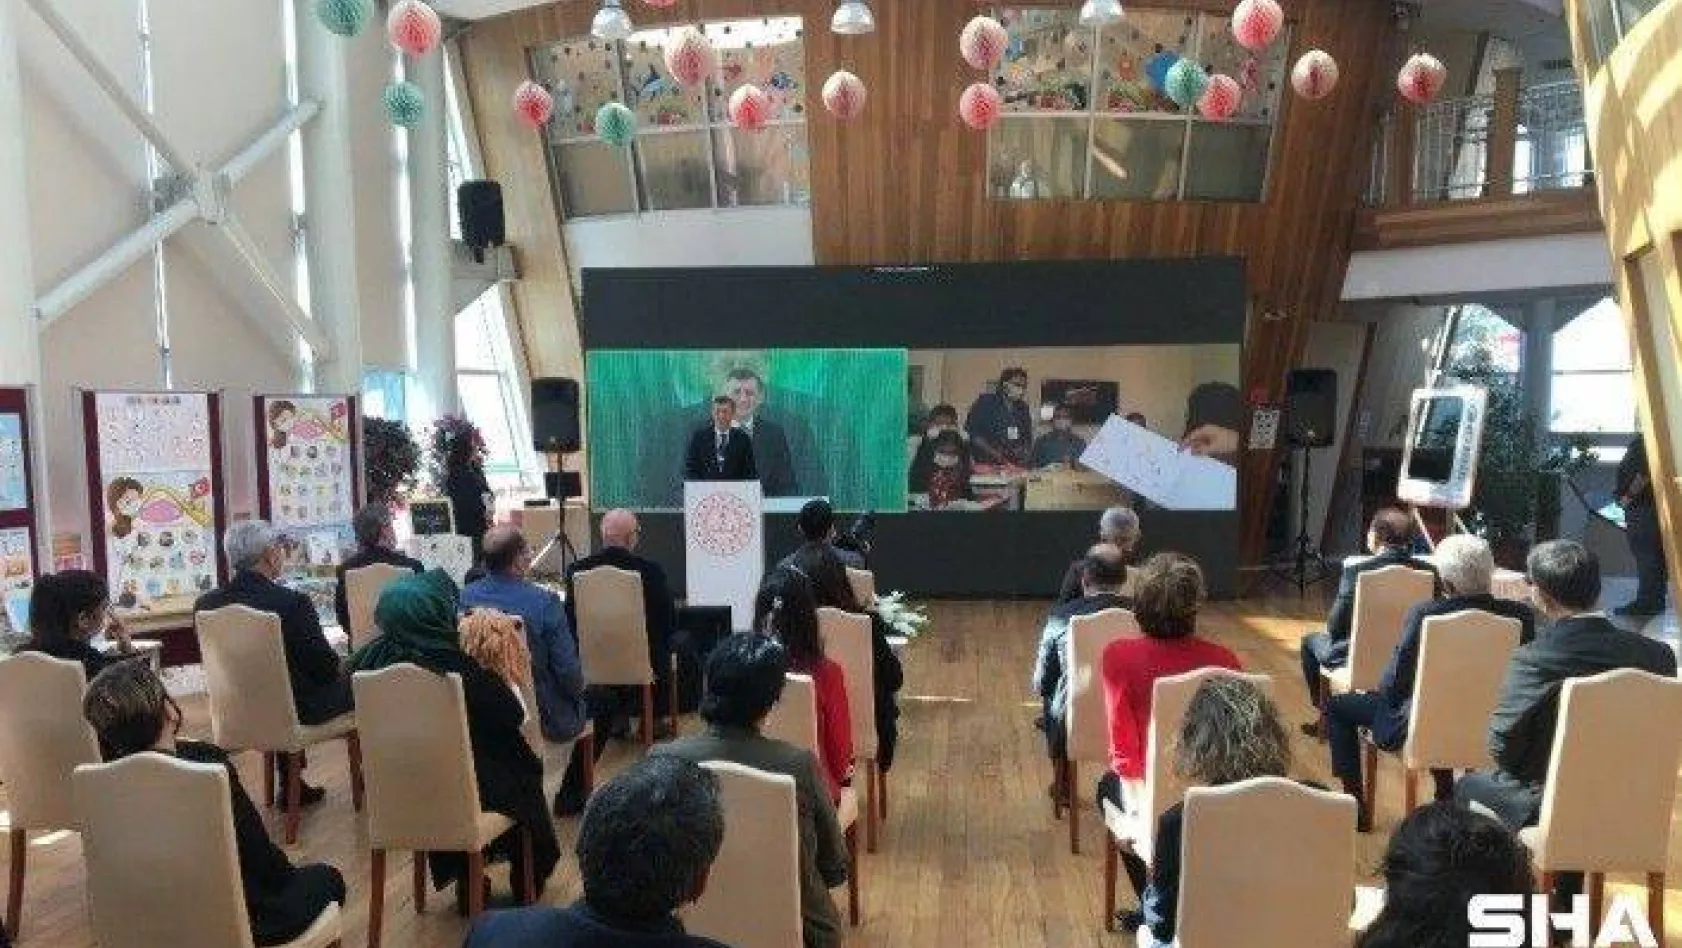 Milli Eğitim Bakanı Ziya Selçuk Erken Çocukluk Eğitim projelerini tanıttı